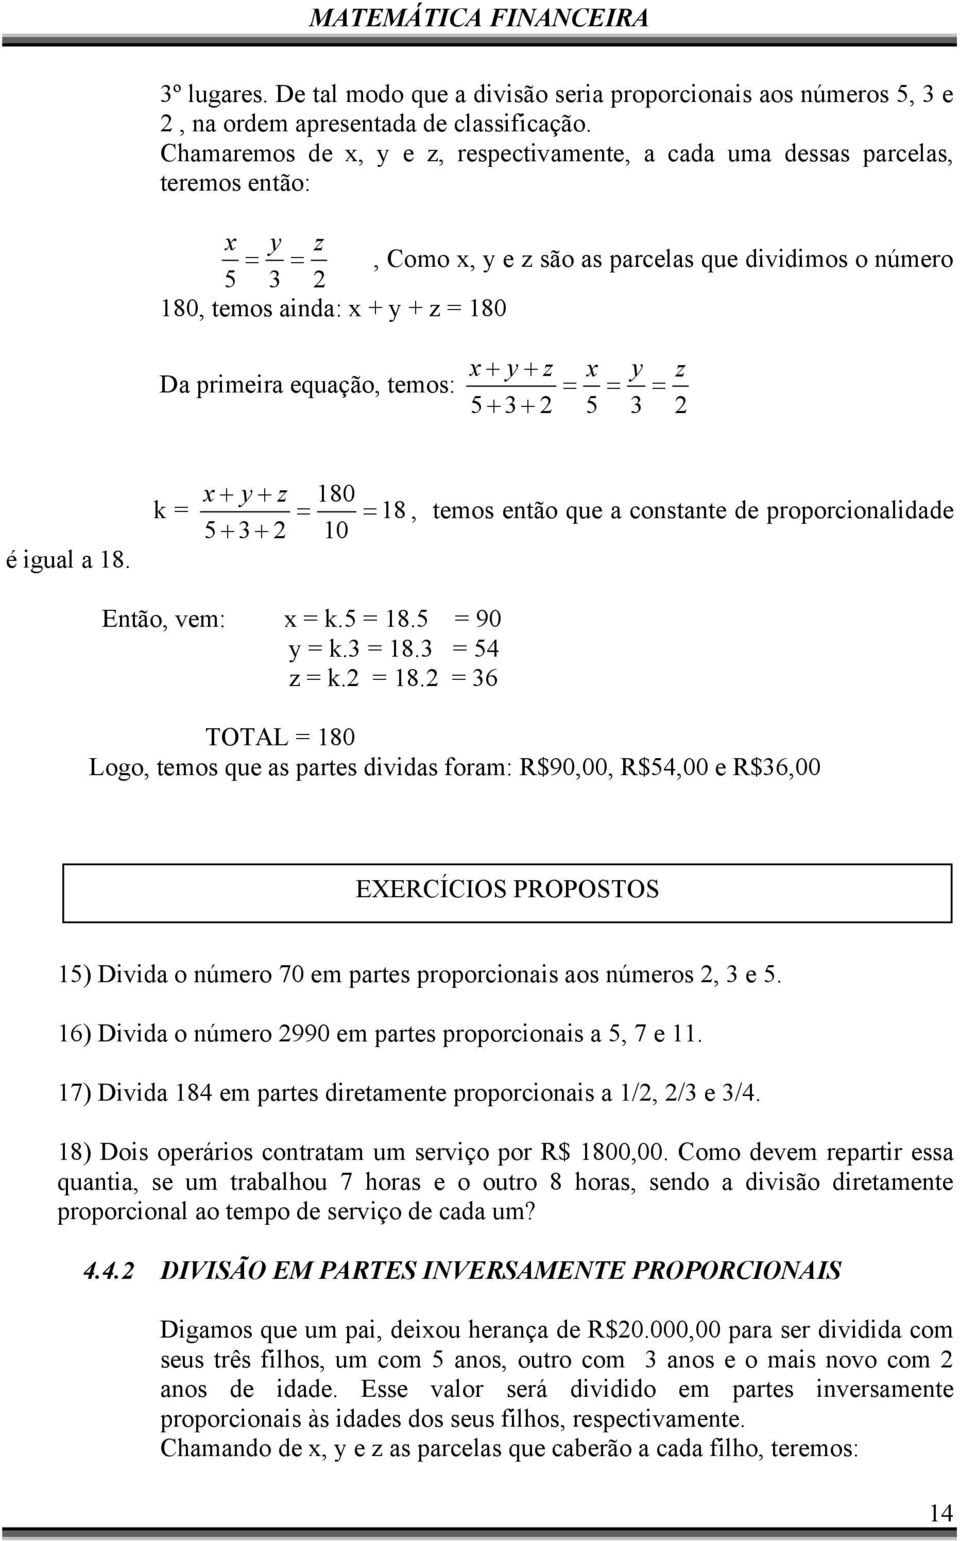 equação, temos: x + y + z 5 + 3+ 2 x = = 5 y 3 z = 2 é igual a 18. x + y + z 180 k = = = 18, temos então que a constante de proporcionalidade 5 + 3+ 2 10 Então, vem: x = k.5 = 18.5 = 90 y = k.3 = 18.